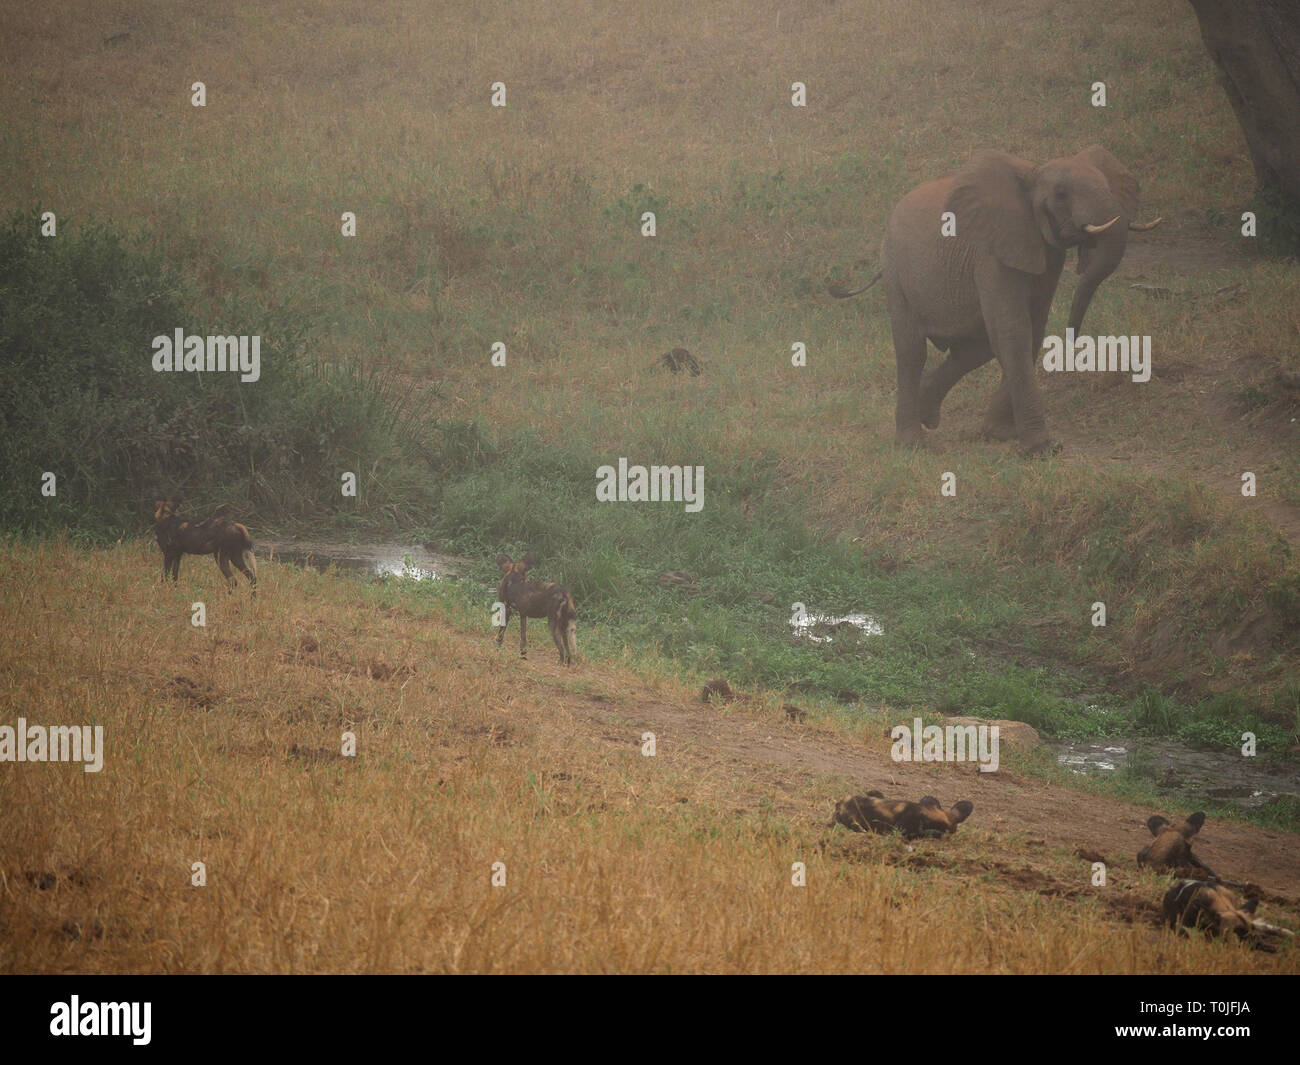 L'éléphant d'Afrique est confrontée à de jeunes chiens sauvages ou peint les loups (Lycaon pictus) dans la brume matinale, collines Ngulia NP de Tsavo Ouest, le Kenya, l'Afrique Banque D'Images